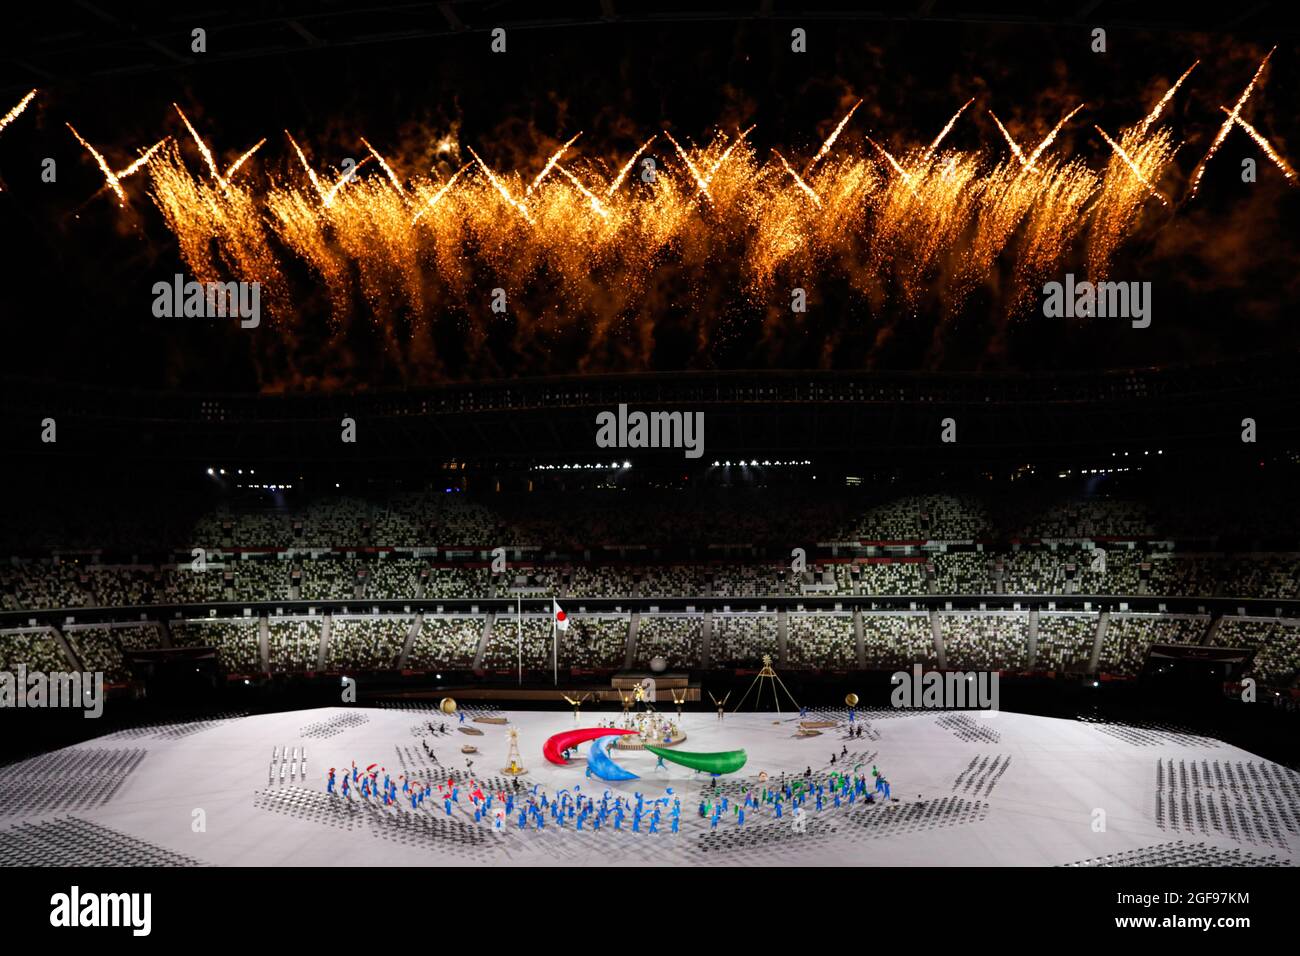 Tokyo, Japon. 2021 août 25. Cérémonie d'ouverture des Jeux paralympiques Tokyo 2020. Panorama dans le stade avec feux d'artifice crédit: Marco Ciccolella/Alay Live News Banque D'Images